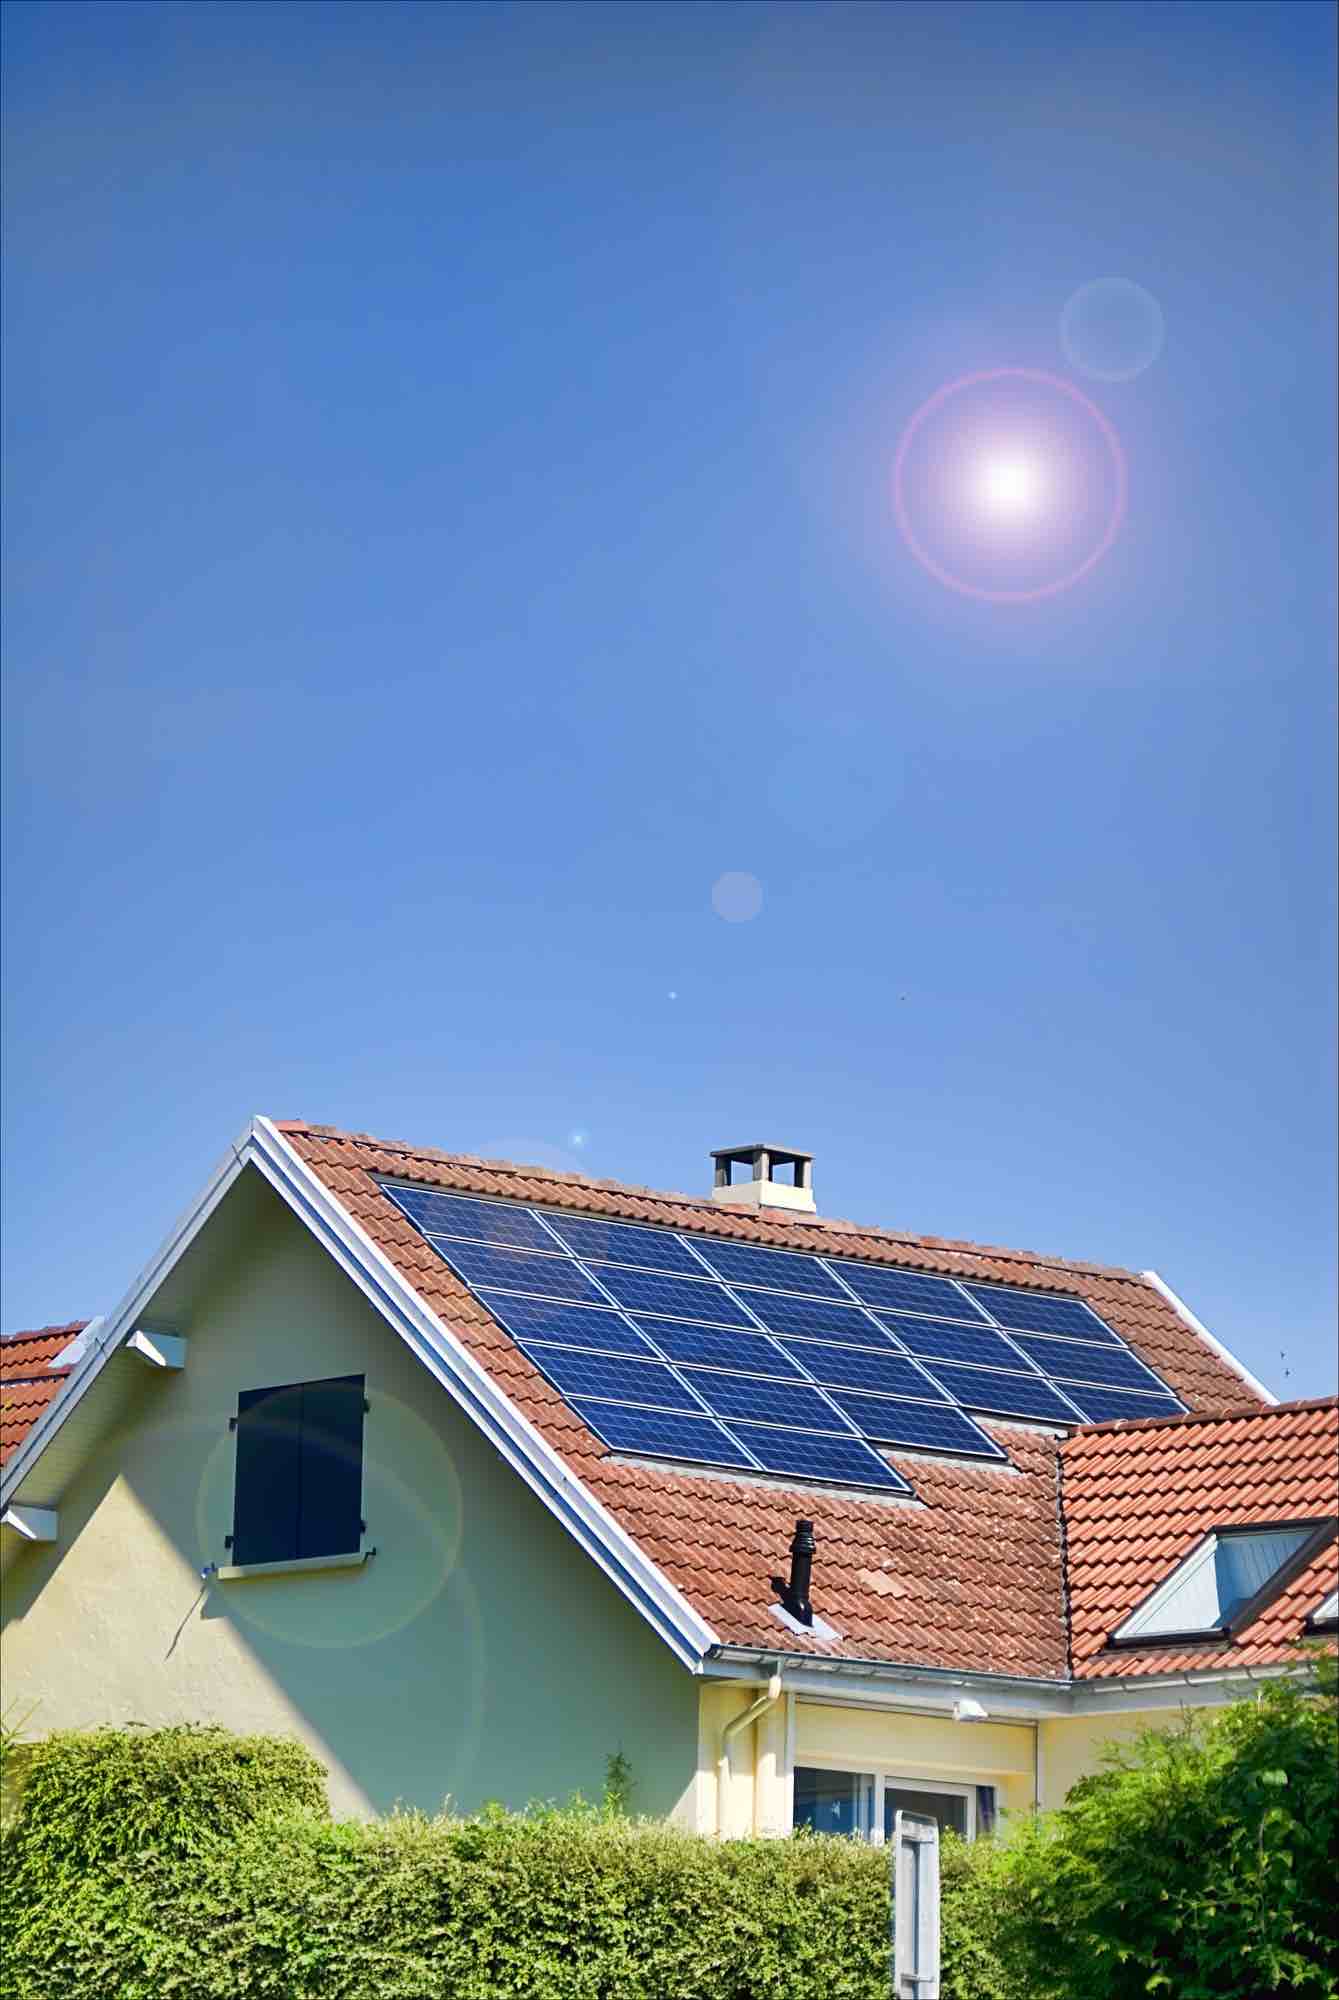 Utilidad de una buena calculadora solar fotovoltaica para viviendas